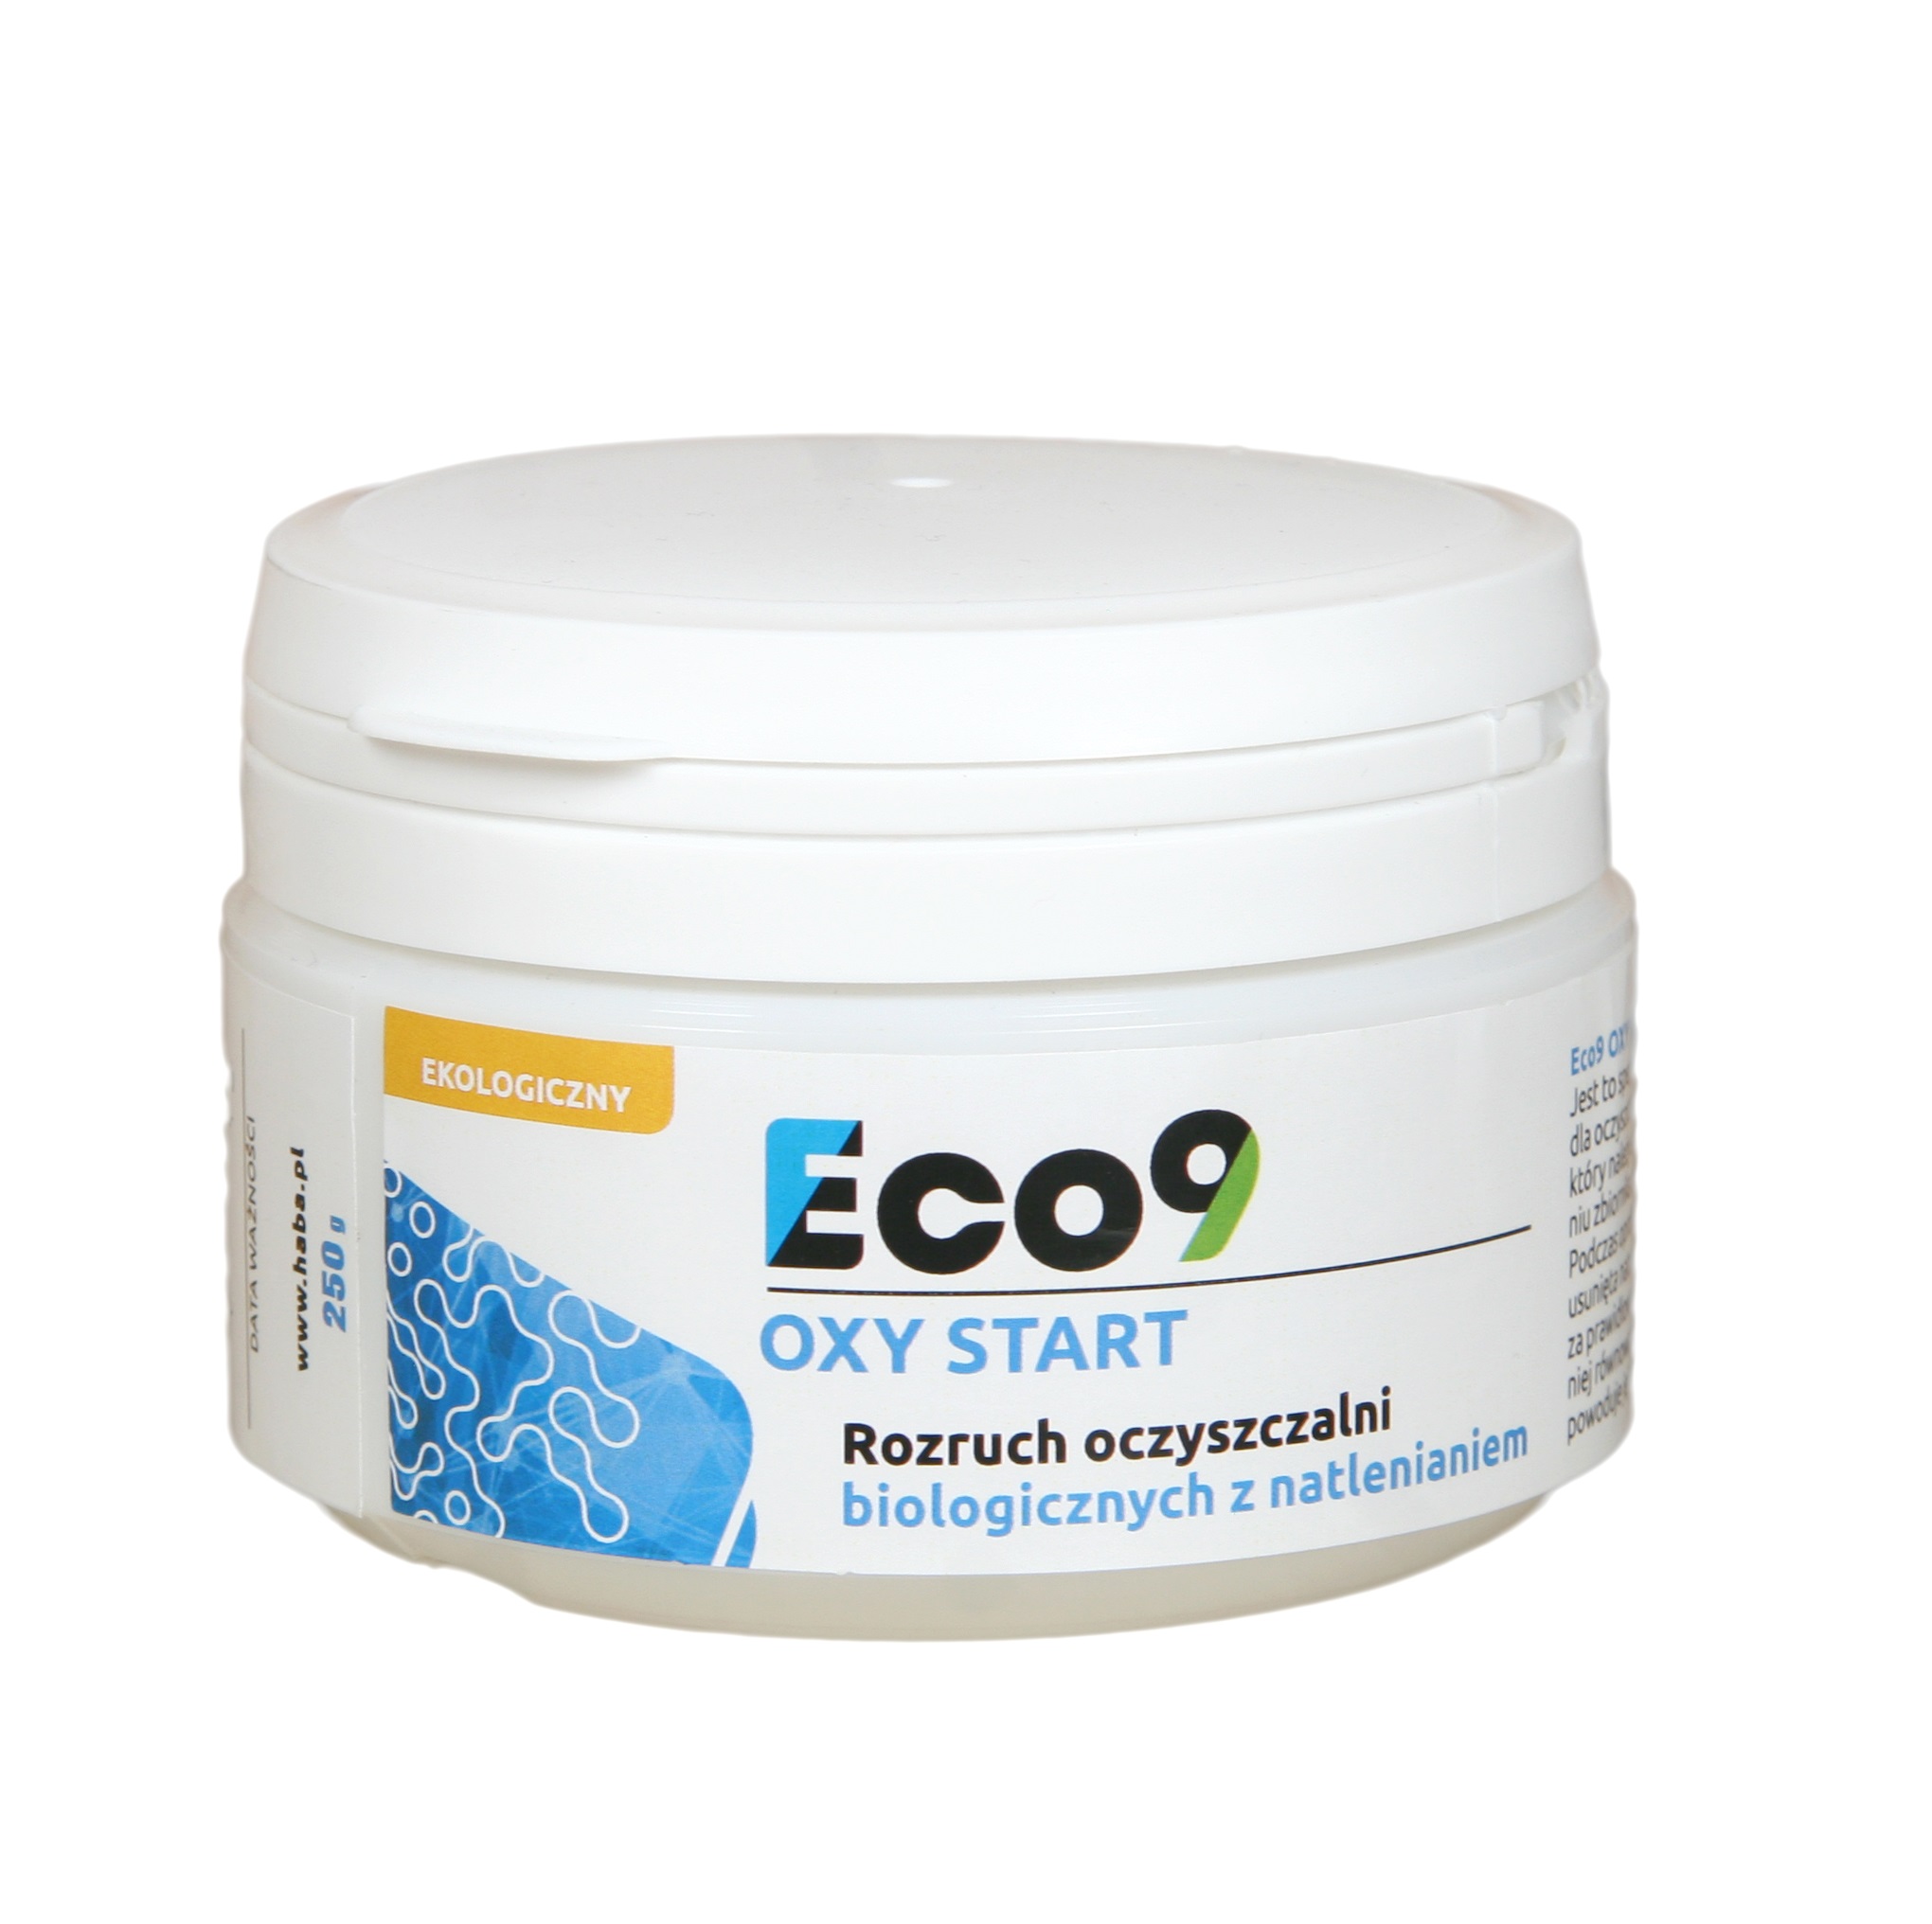 Preparat Eco9 OXY START dla Biologicznych Oczyszczalni Ścieków